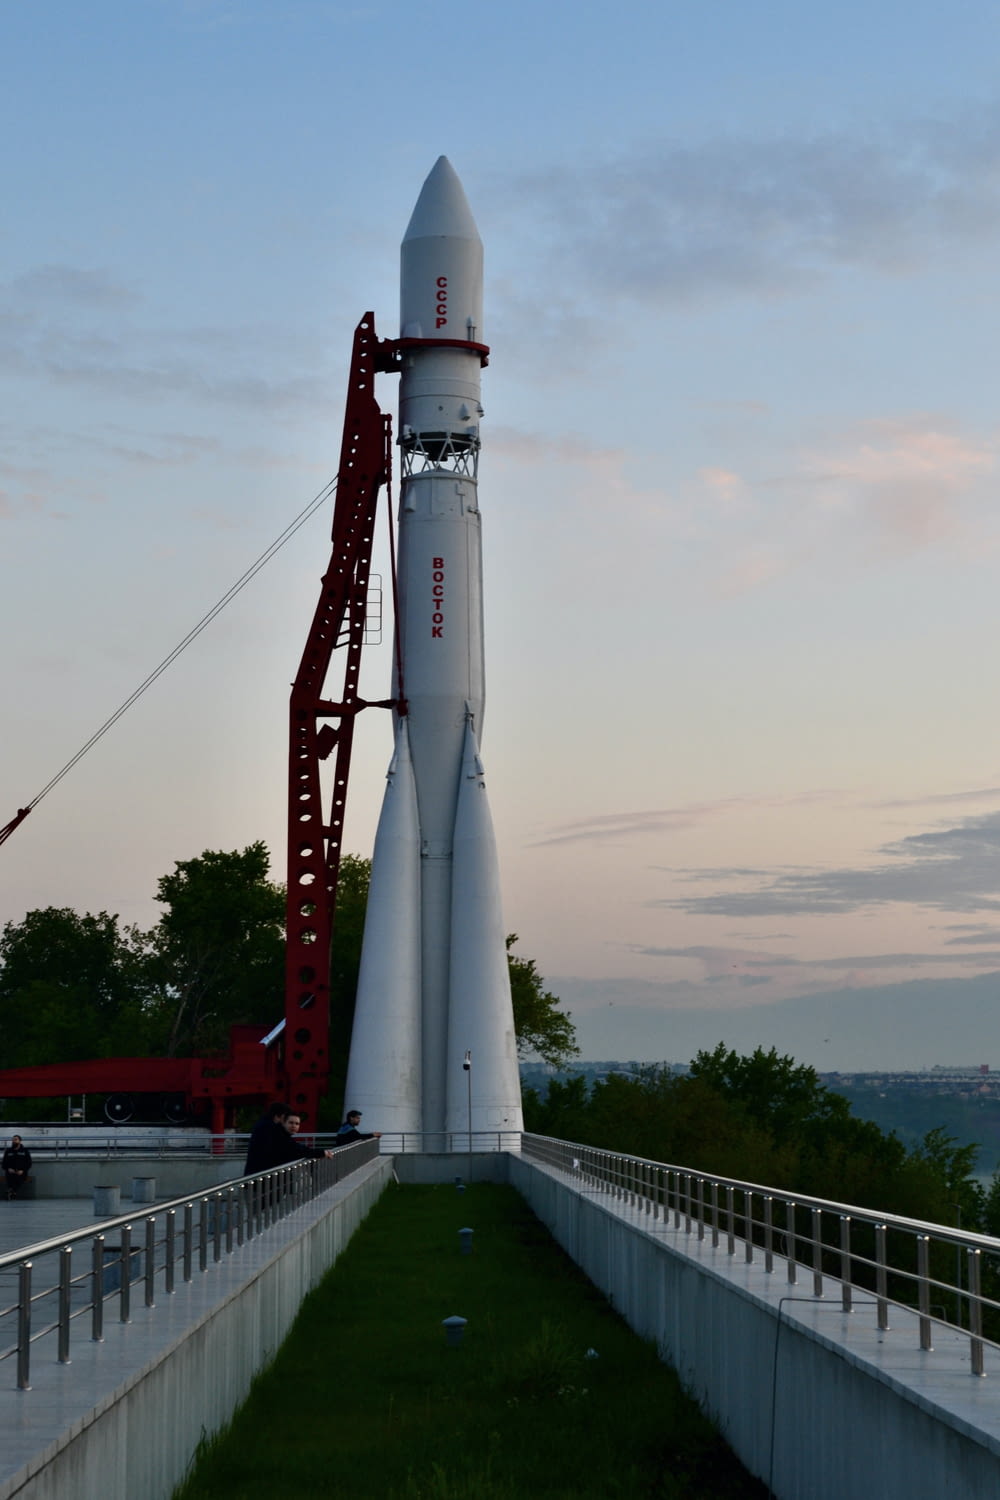 a rocket on a bridge